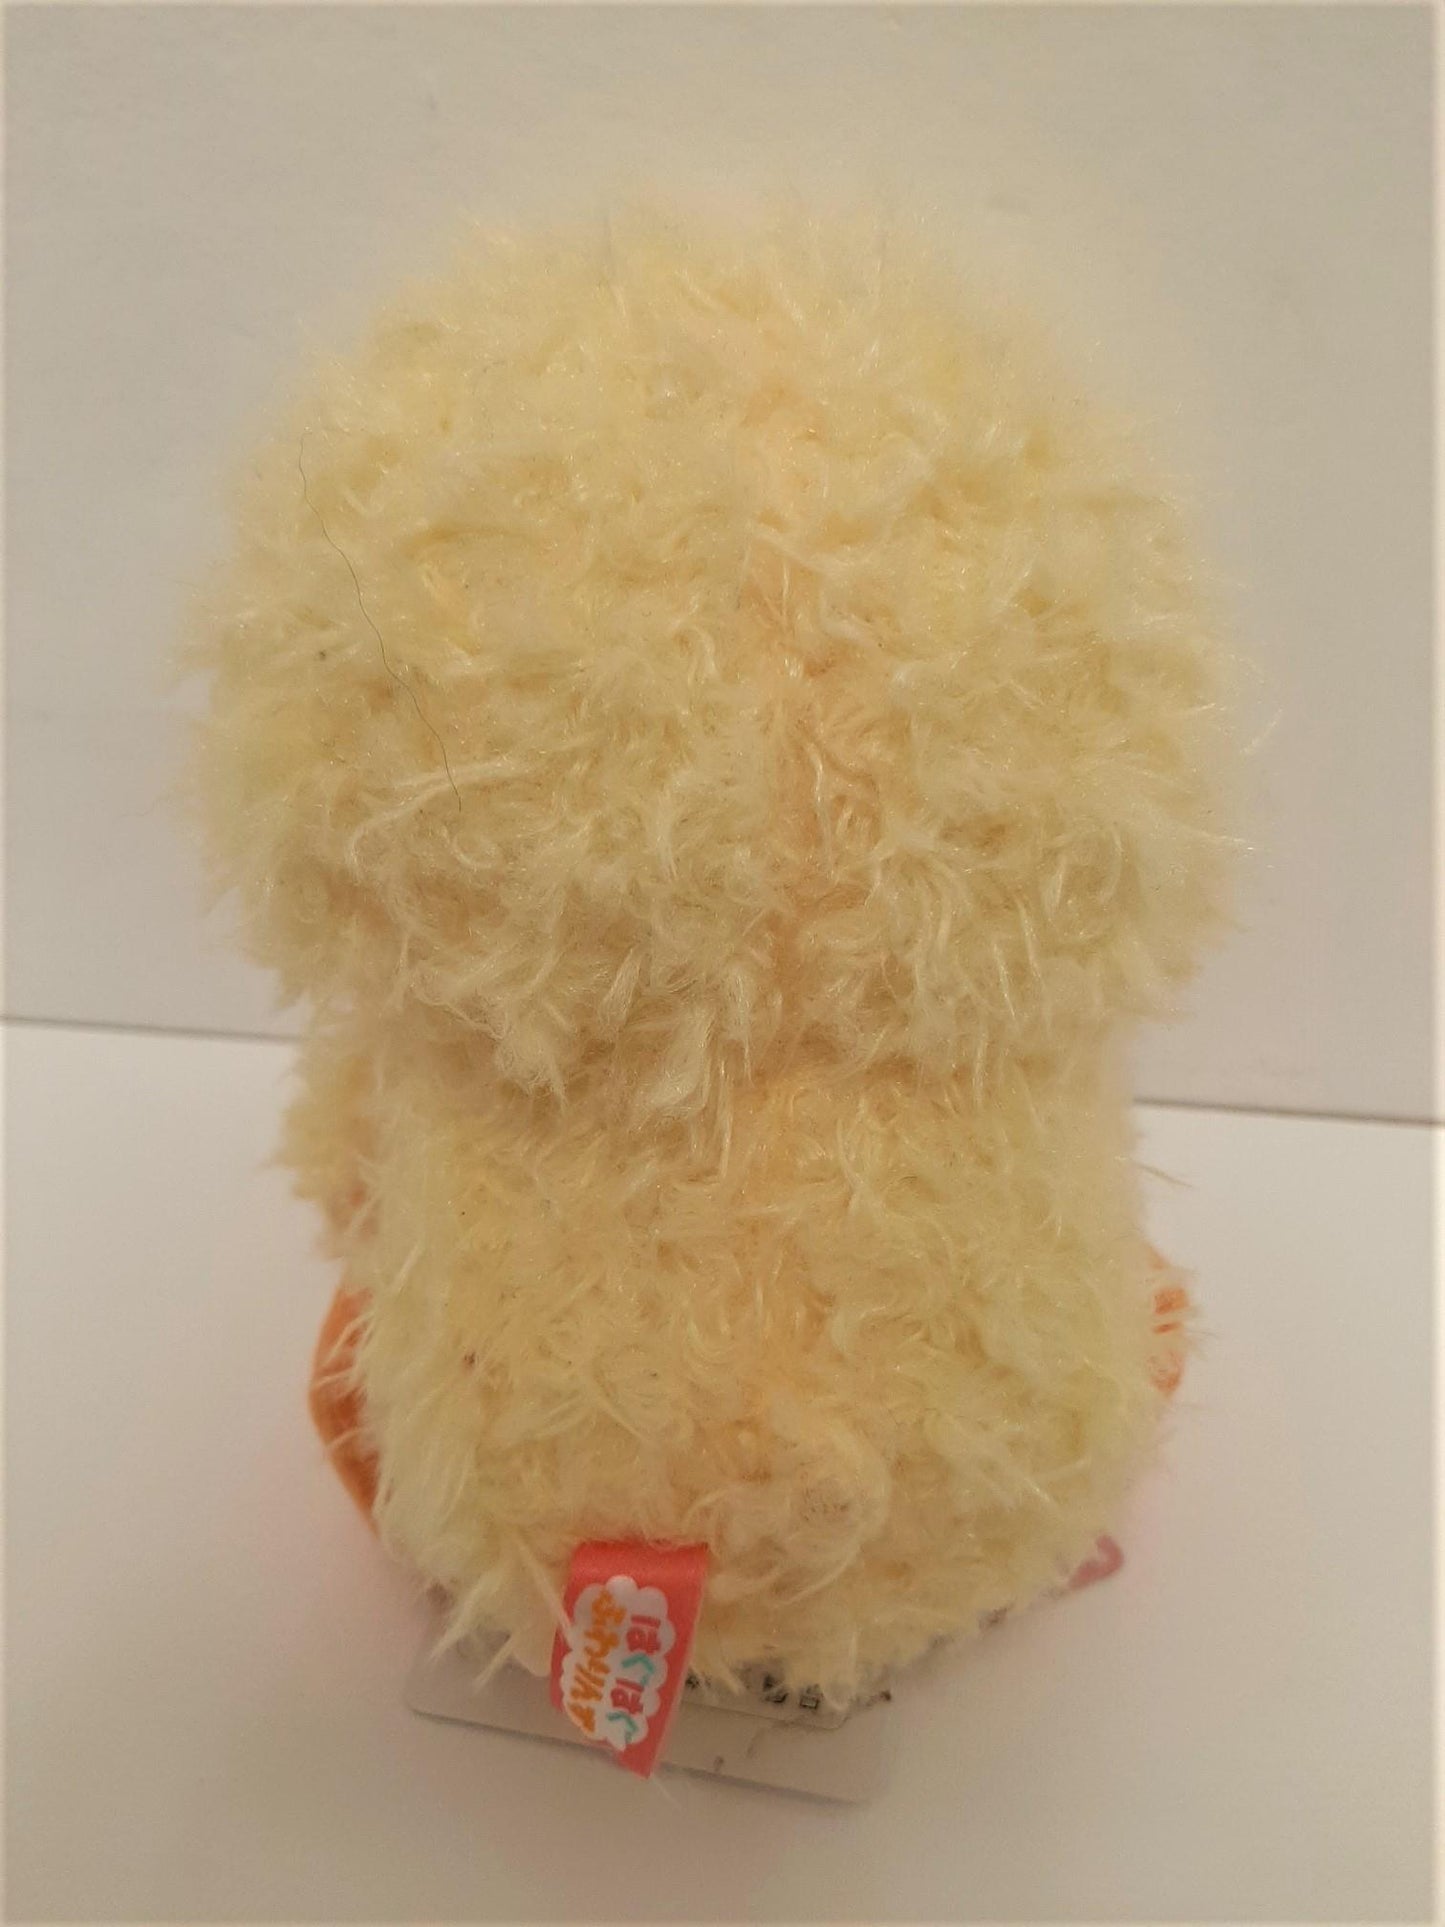 Amuse: Fuzzy Chick 5" Plush